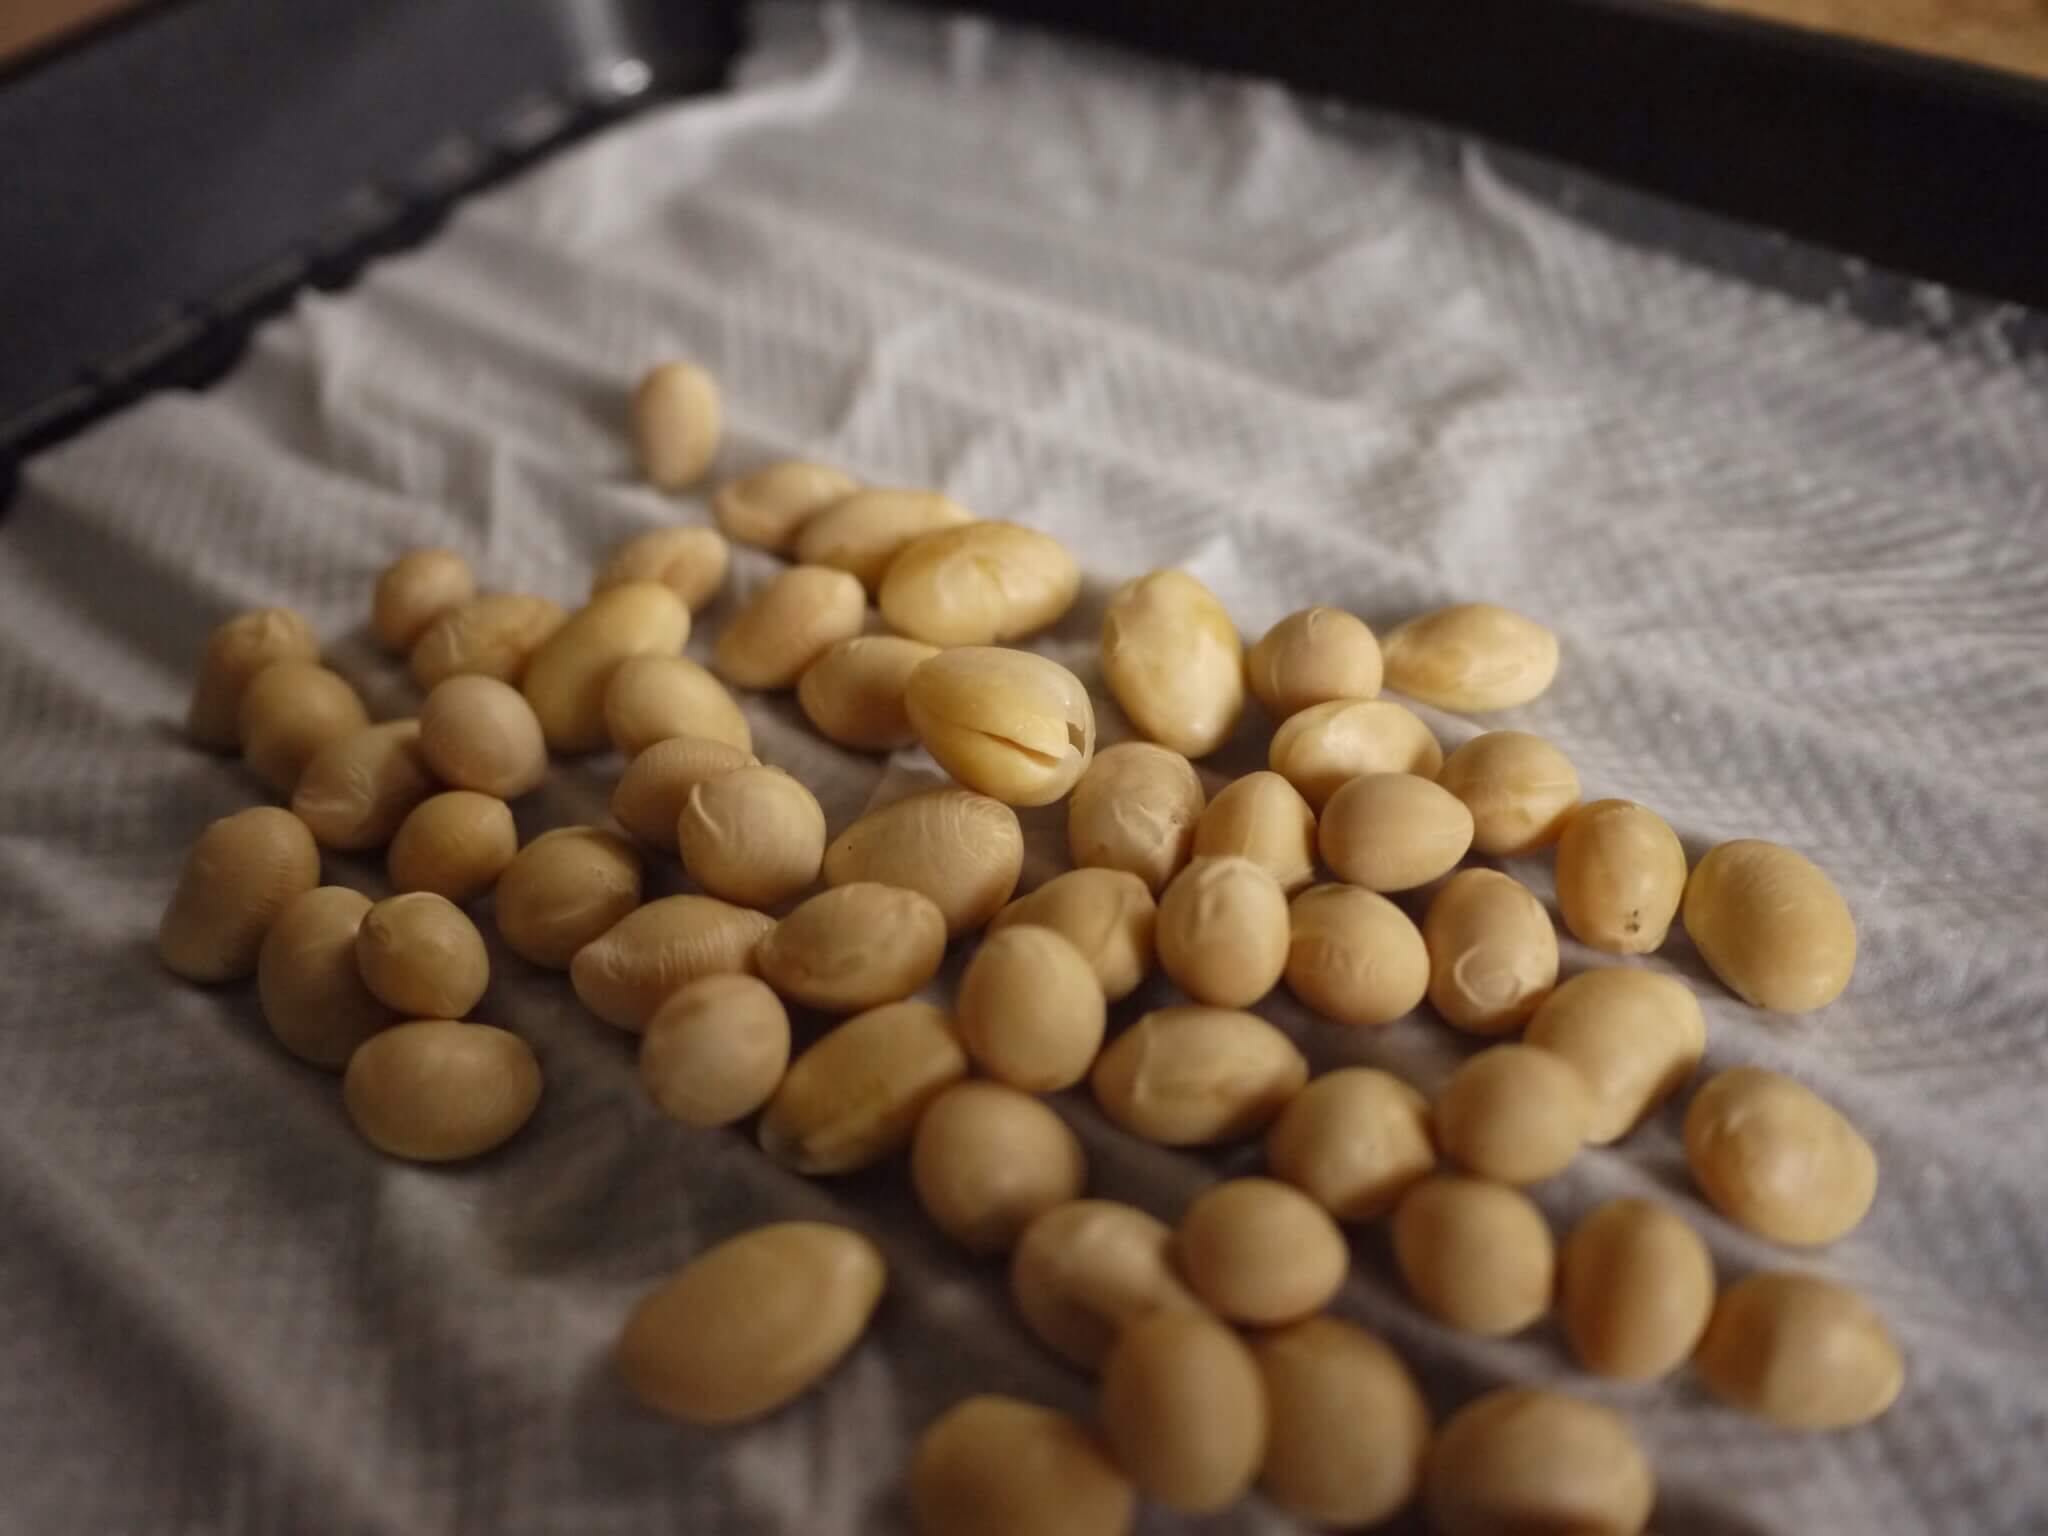 発芽豆を作ってみた。豆の旨味と栄養分が劇的にアップするよ